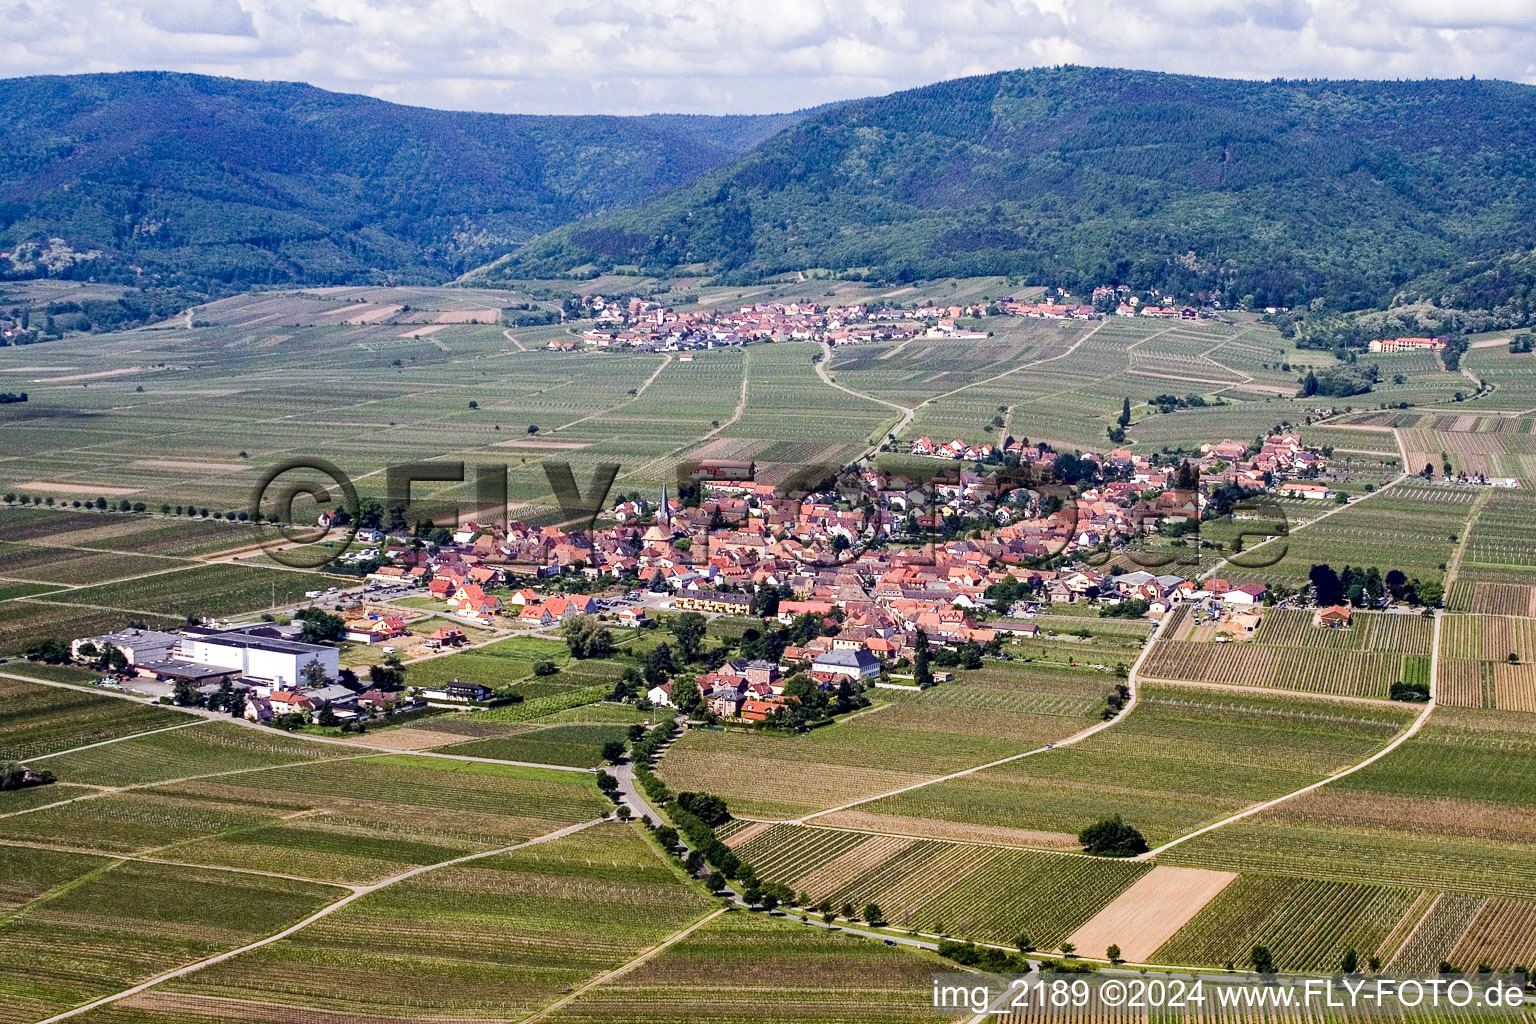 Luftbild von Dorf - Ansicht am Rande von landwirtschaftlichen Feldern und Nutzflächen in Rhodt in Rhodt unter Rietburg im Bundesland Rheinland-Pfalz, Deutschland